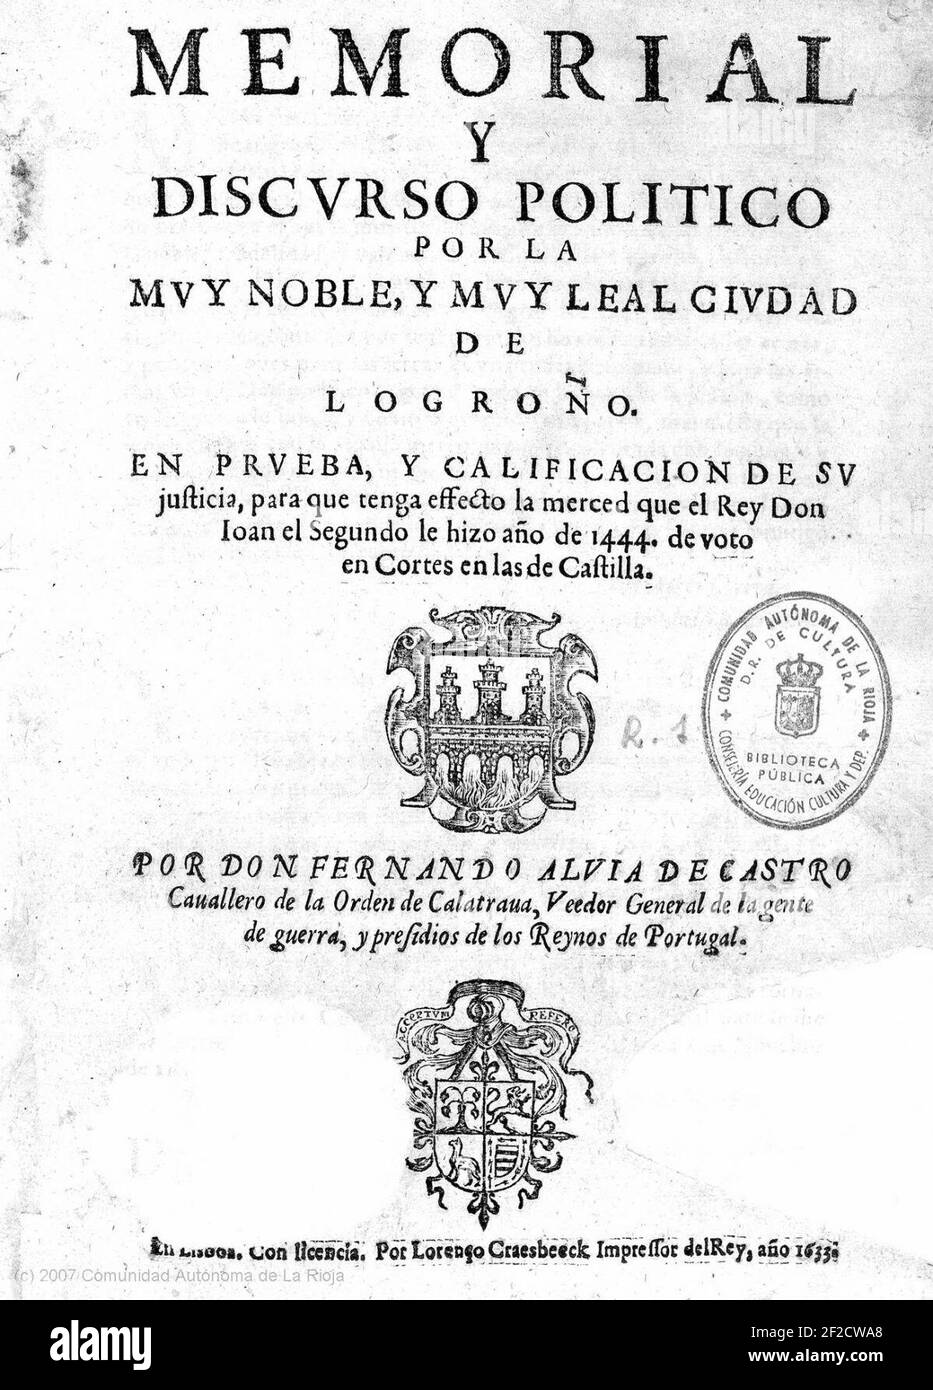 Portada del Memorial por la Ciudad de Logroño de Fernando Albia de Castro (año 1633). Stock Photo